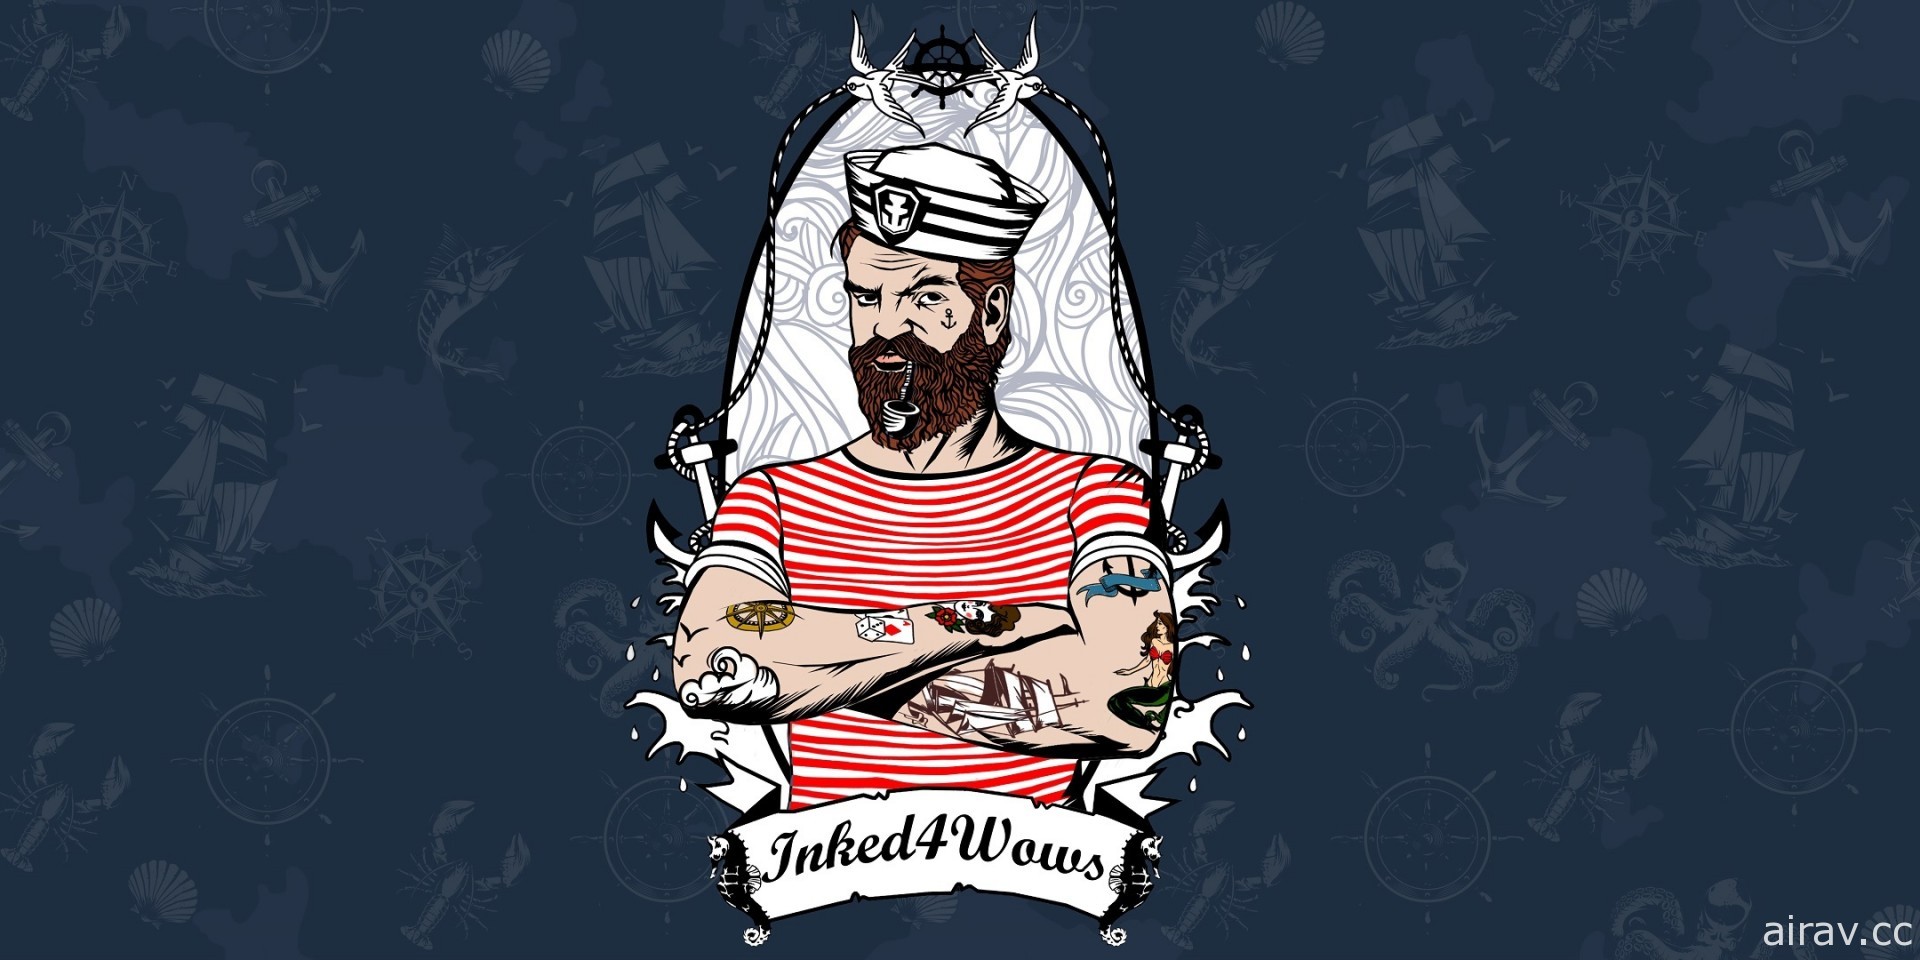 《战舰世界》公布全球纹身投票竞赛优胜者 以 Bismarck 主力舰图案纹身获得玩家青睐